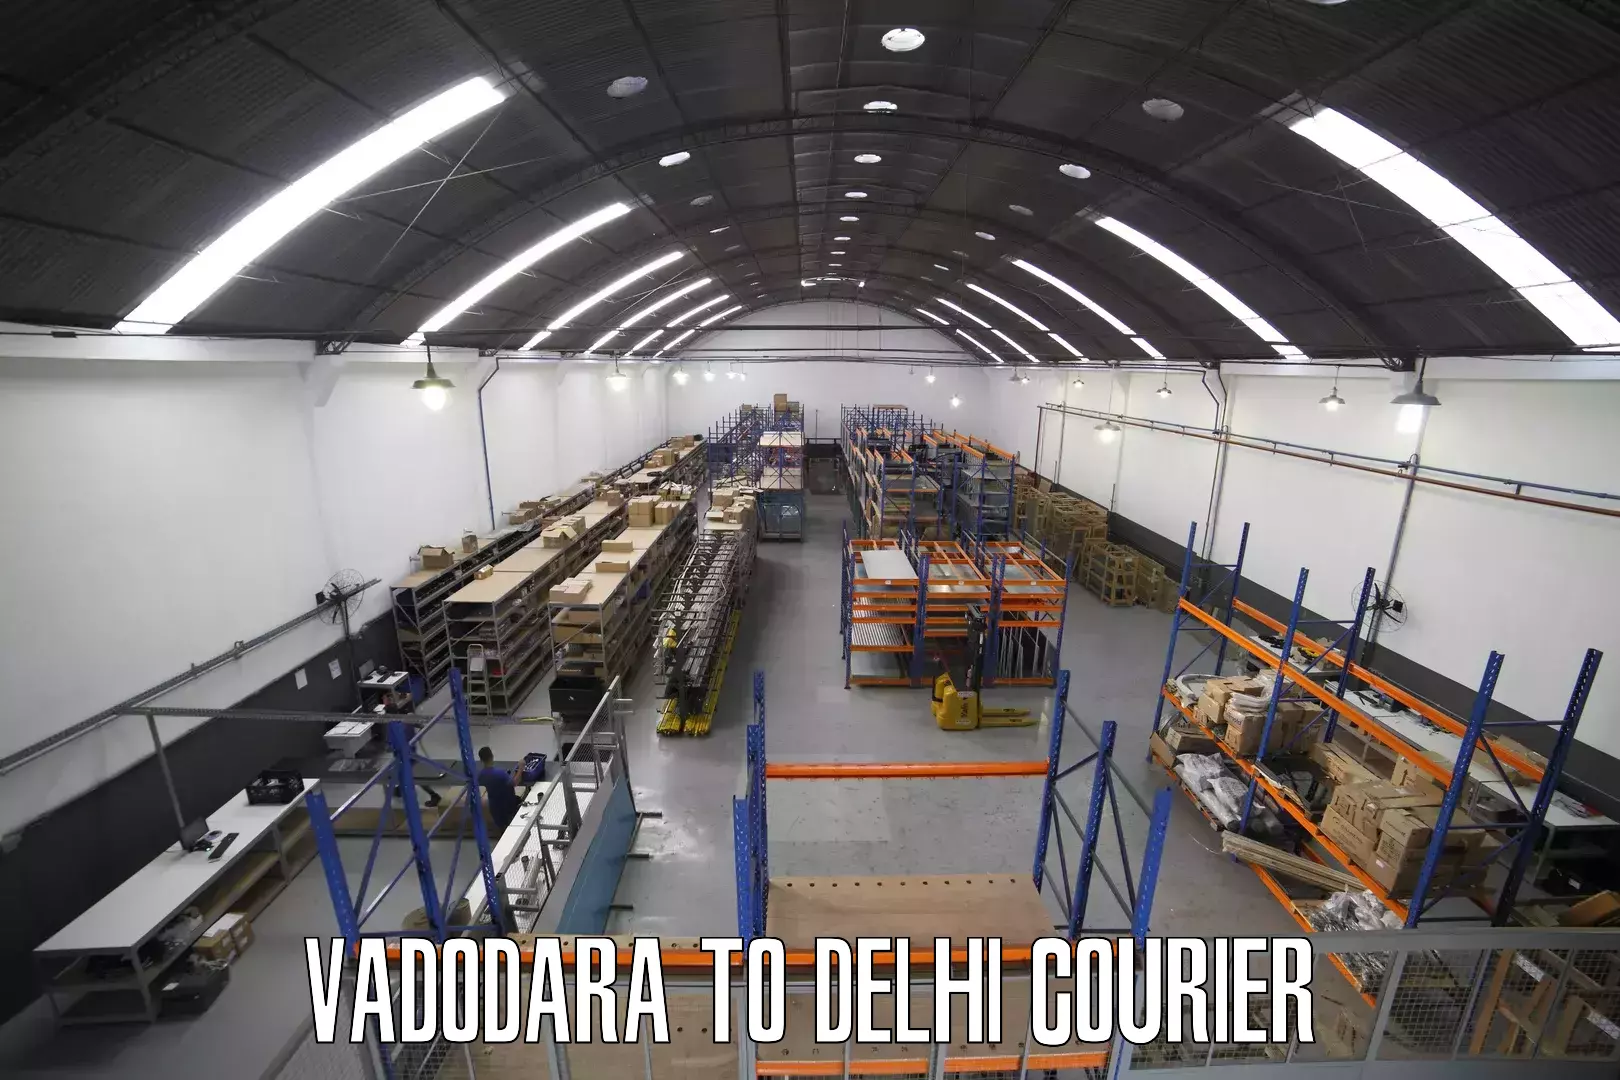 High-speed parcel service Vadodara to Delhi